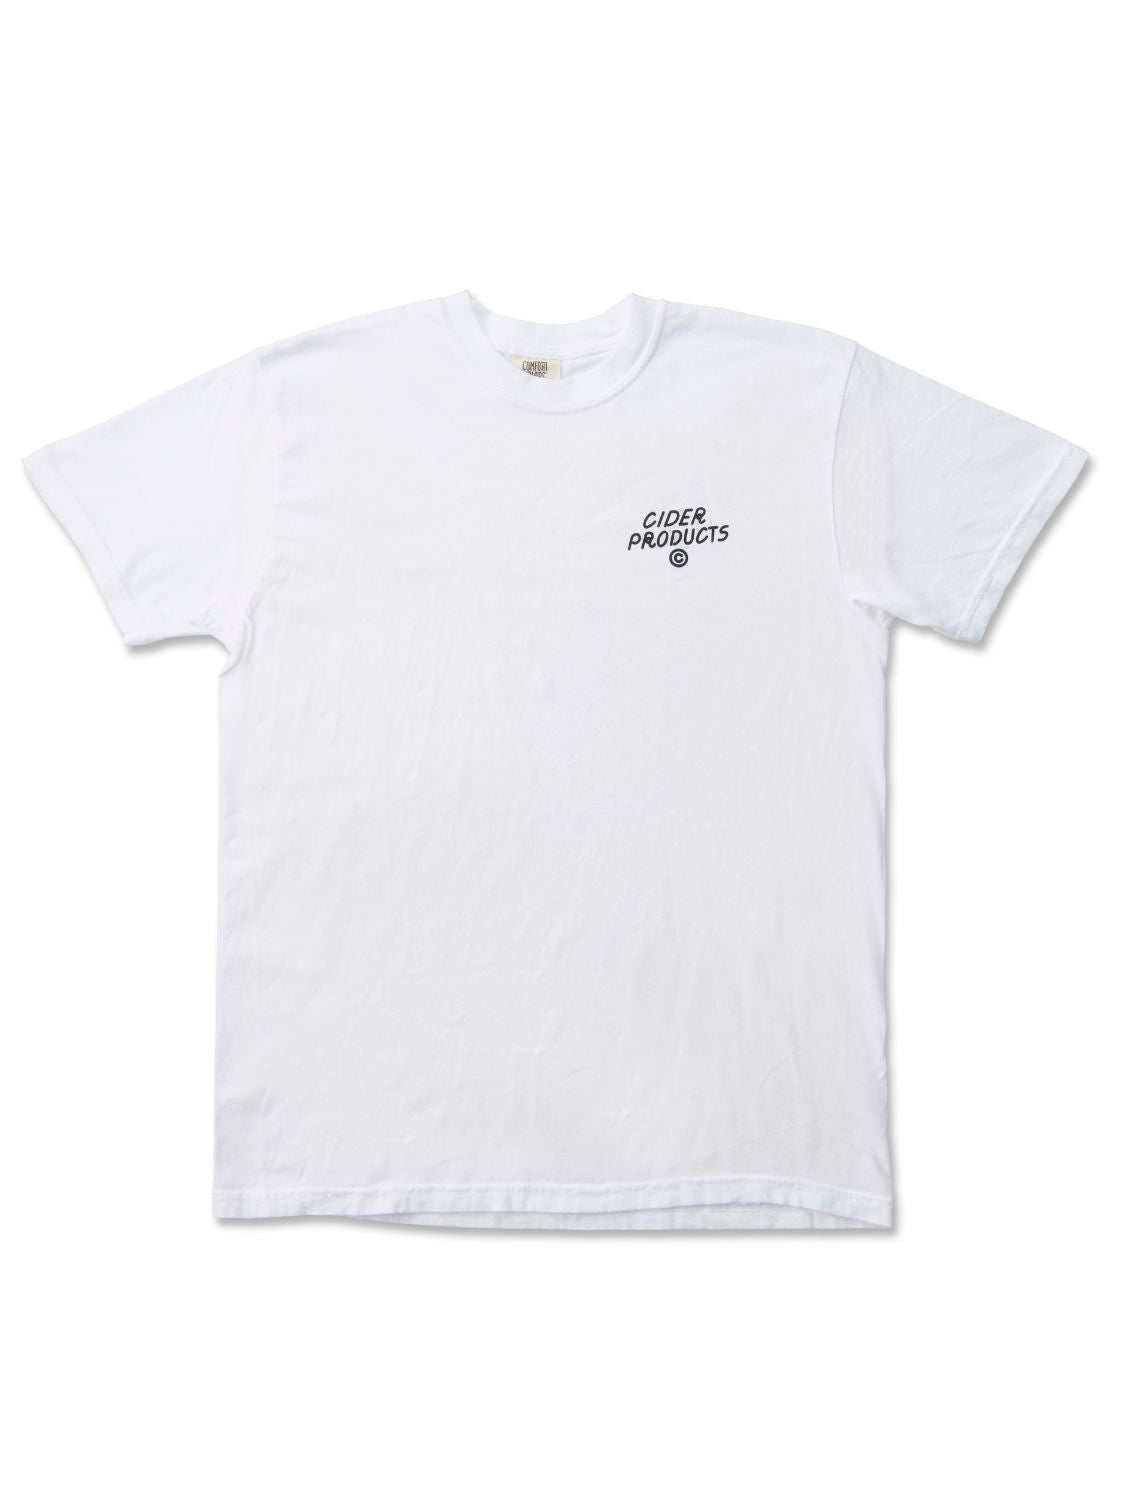 OIMO UNIV. Tshirt / ホワイト